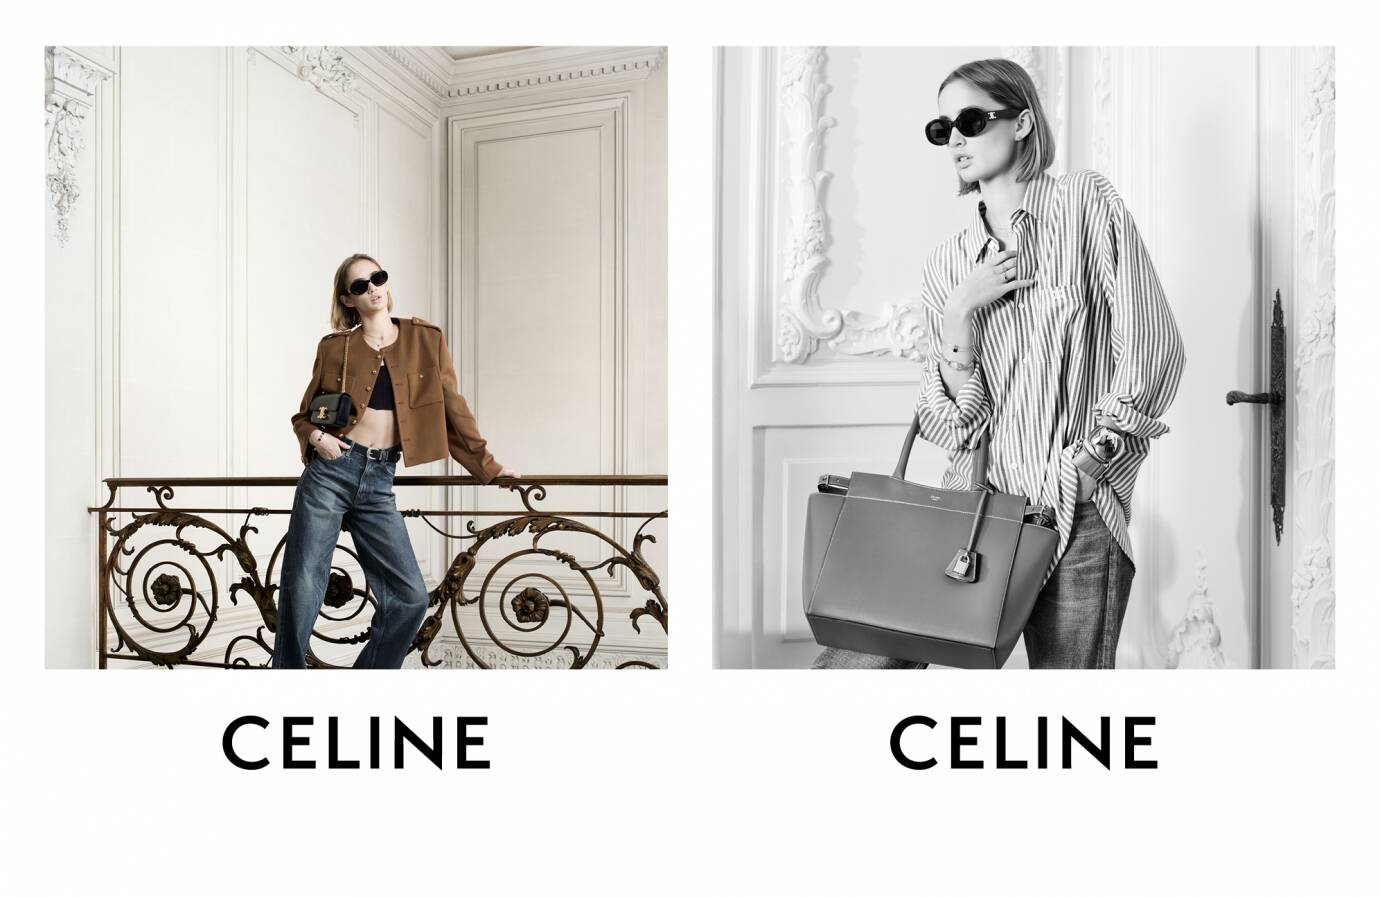 Celine (brand) - Wikipedia